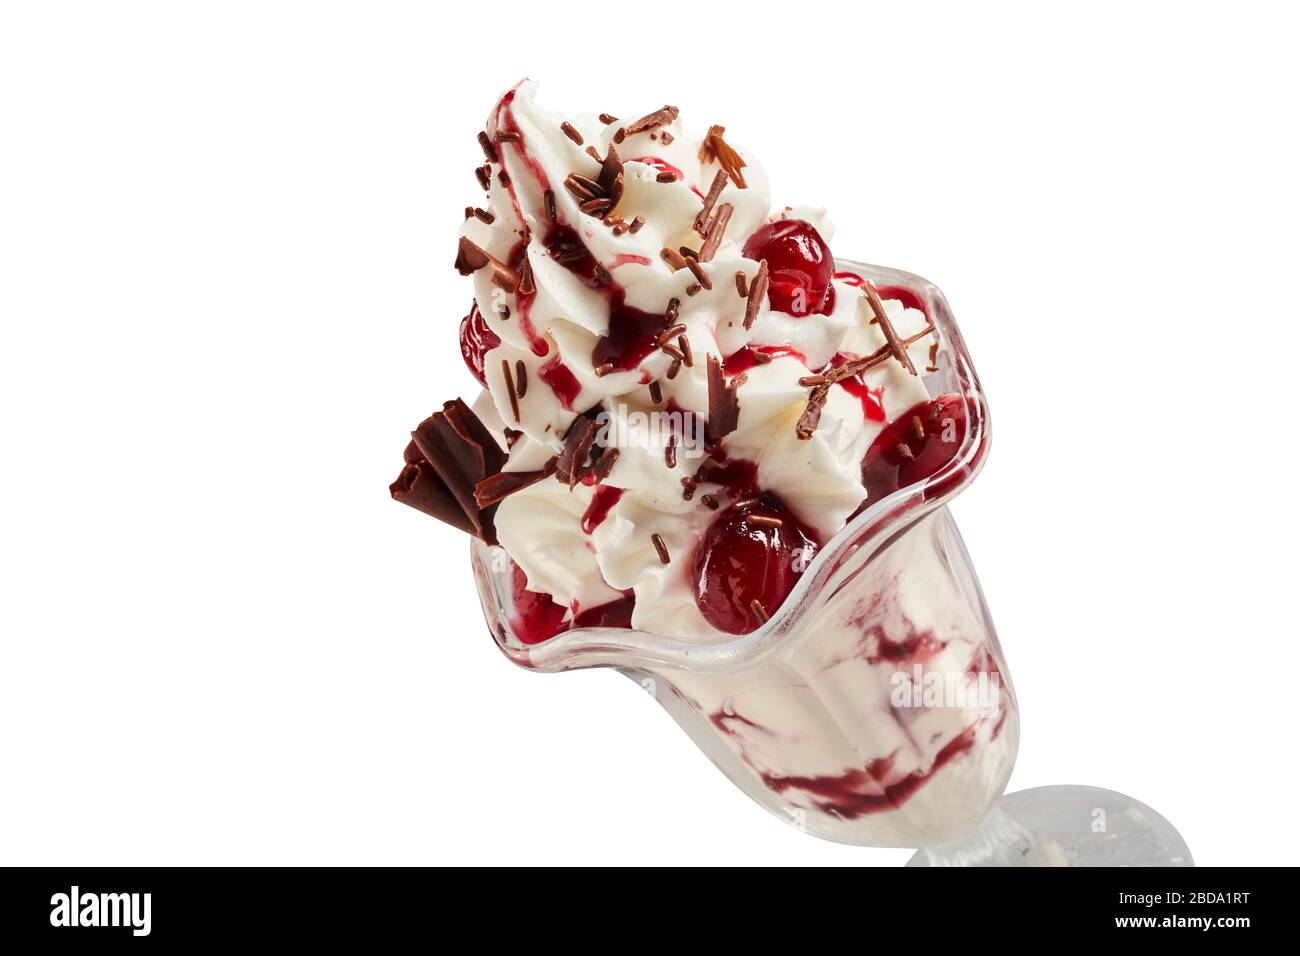 Semi di gelato alla vaniglia con ciliegie di glace o di maraschino condite con coulis o sciroppo e cosparse con scaglie di cioccolato su bianco in primo piano Foto Stock